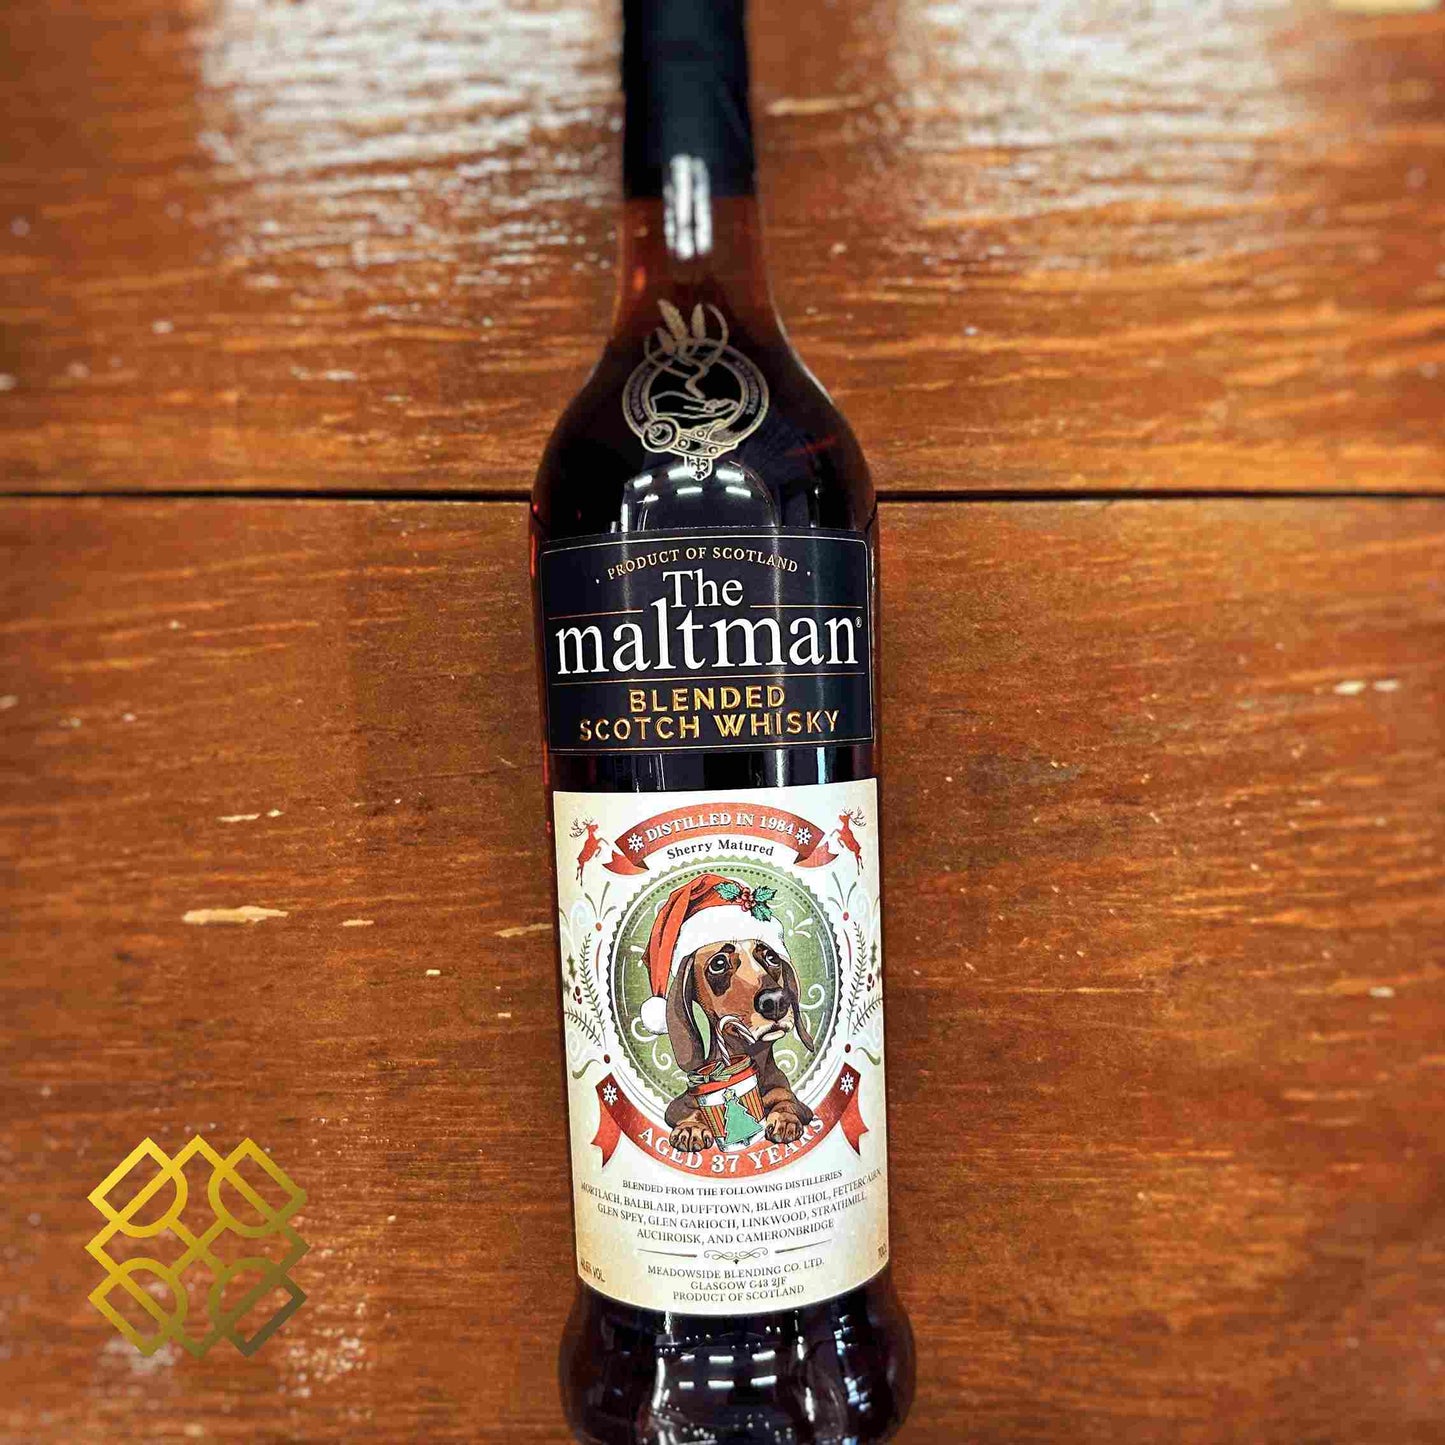 The Maltman - Blended 37YO, 48.6% - Maltman Whisky